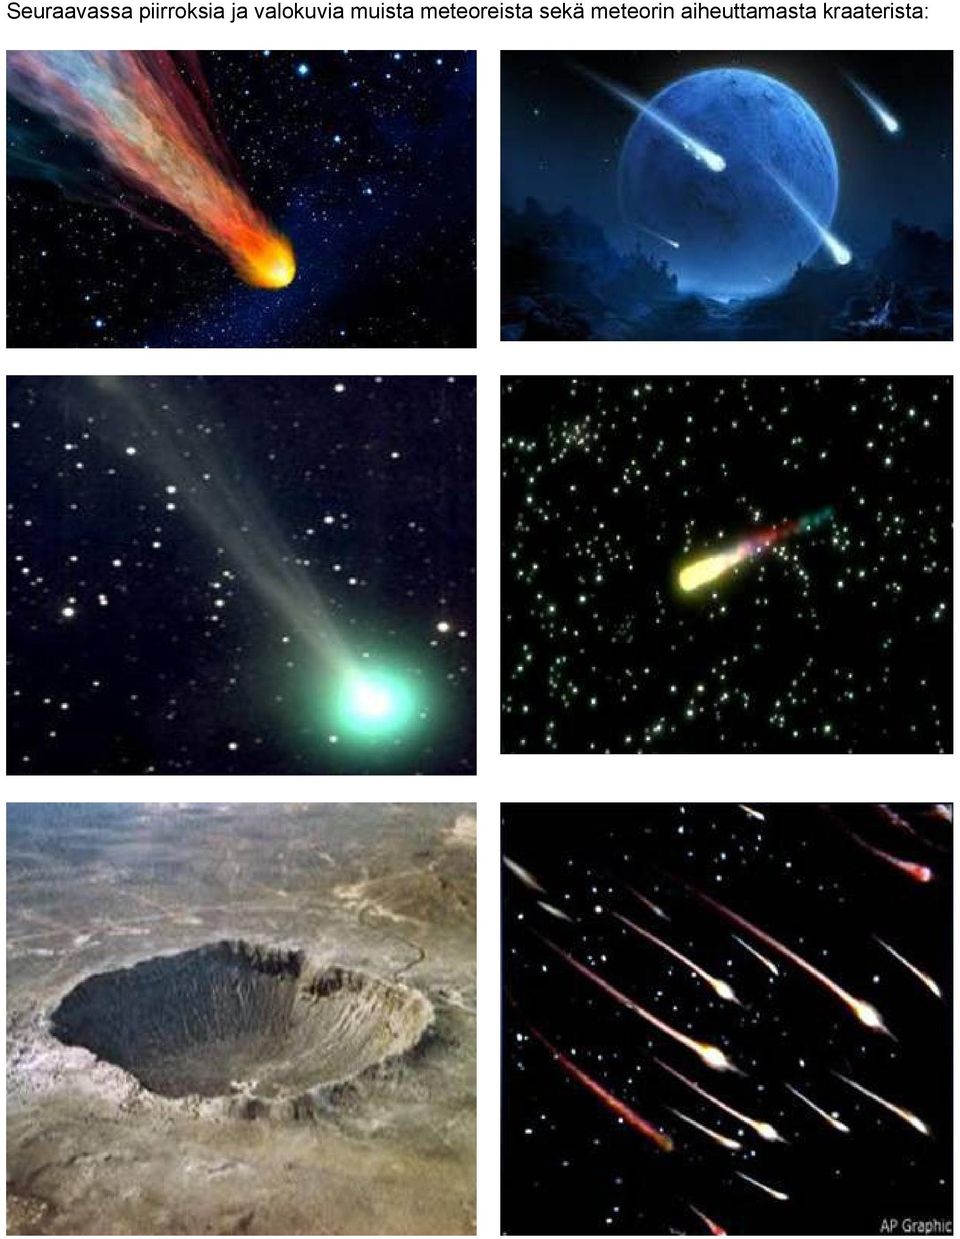 meteoreista sekä